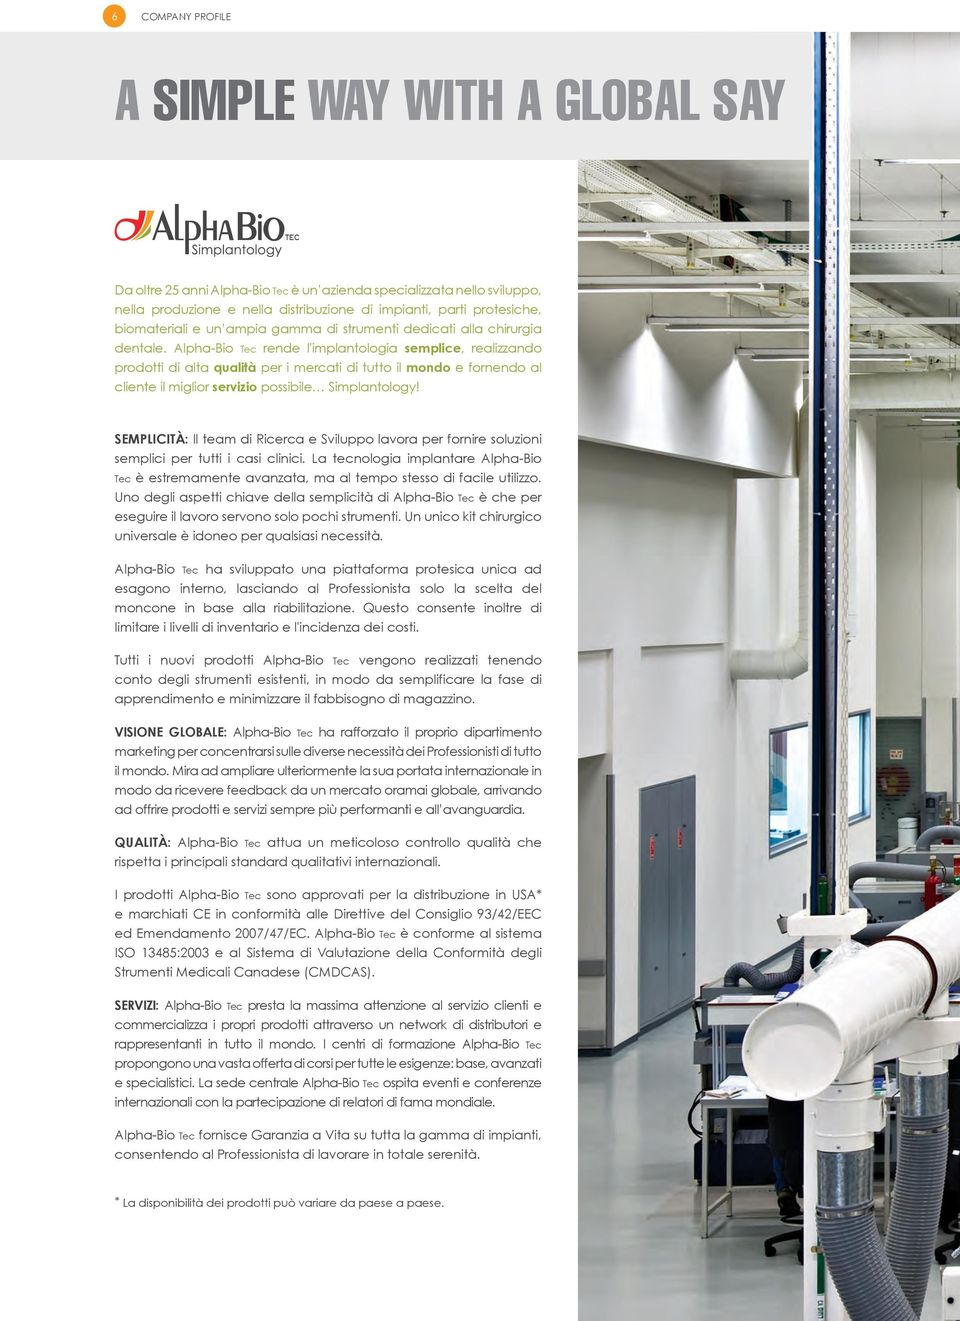 Alpha-Bio Tec rende l'implantologia semplice, realizzando prodotti di alta qualità per i mercati di tutto il mondo e fornendo al cliente il miglior servizio possibile Simplantology!